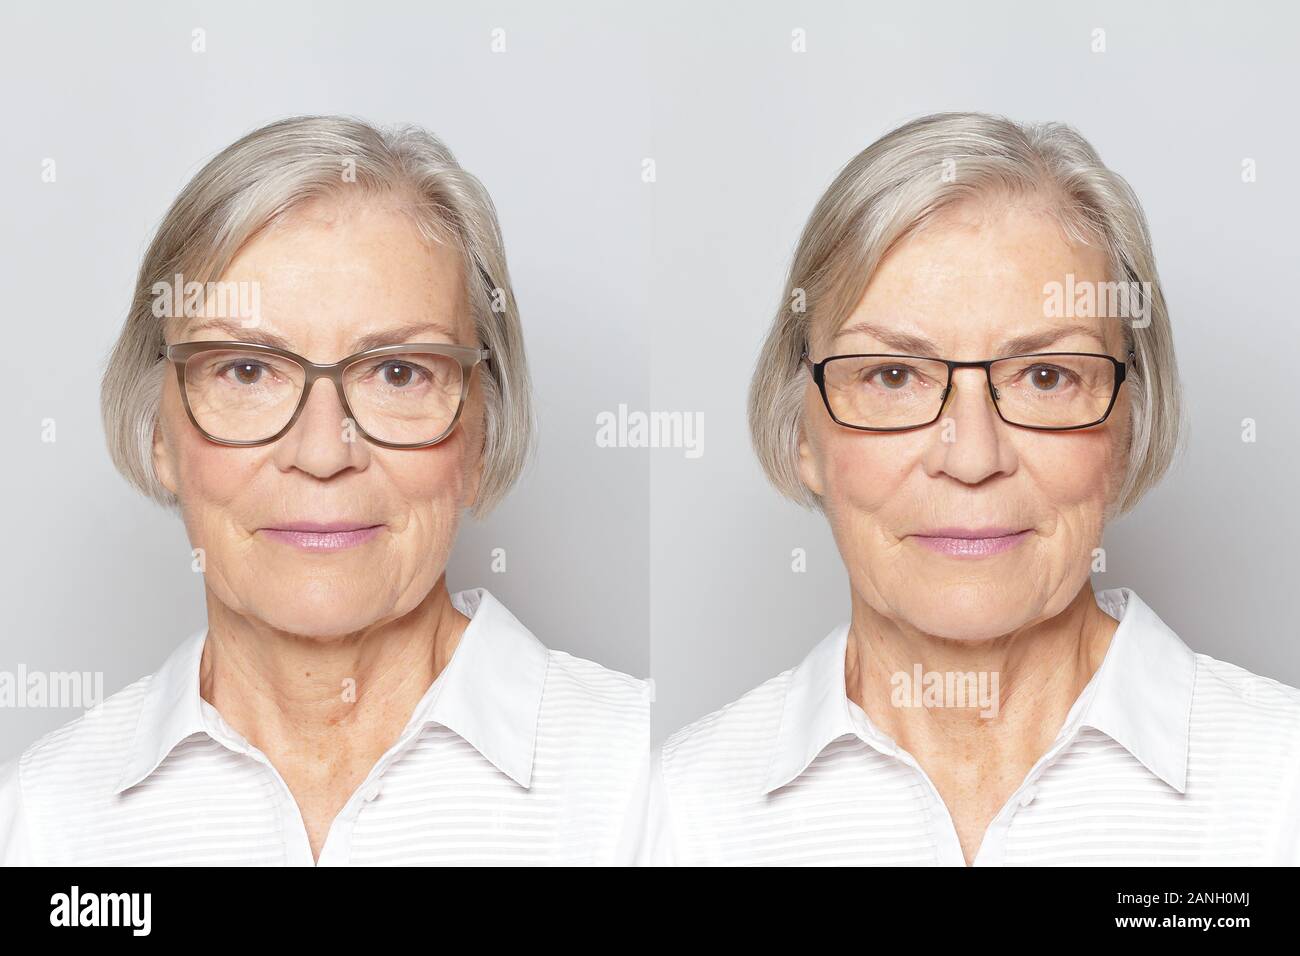 Anteojos de compras en línea con la función try: foto de una mujer mayor con dos fotogramas diferentes. Foto de stock